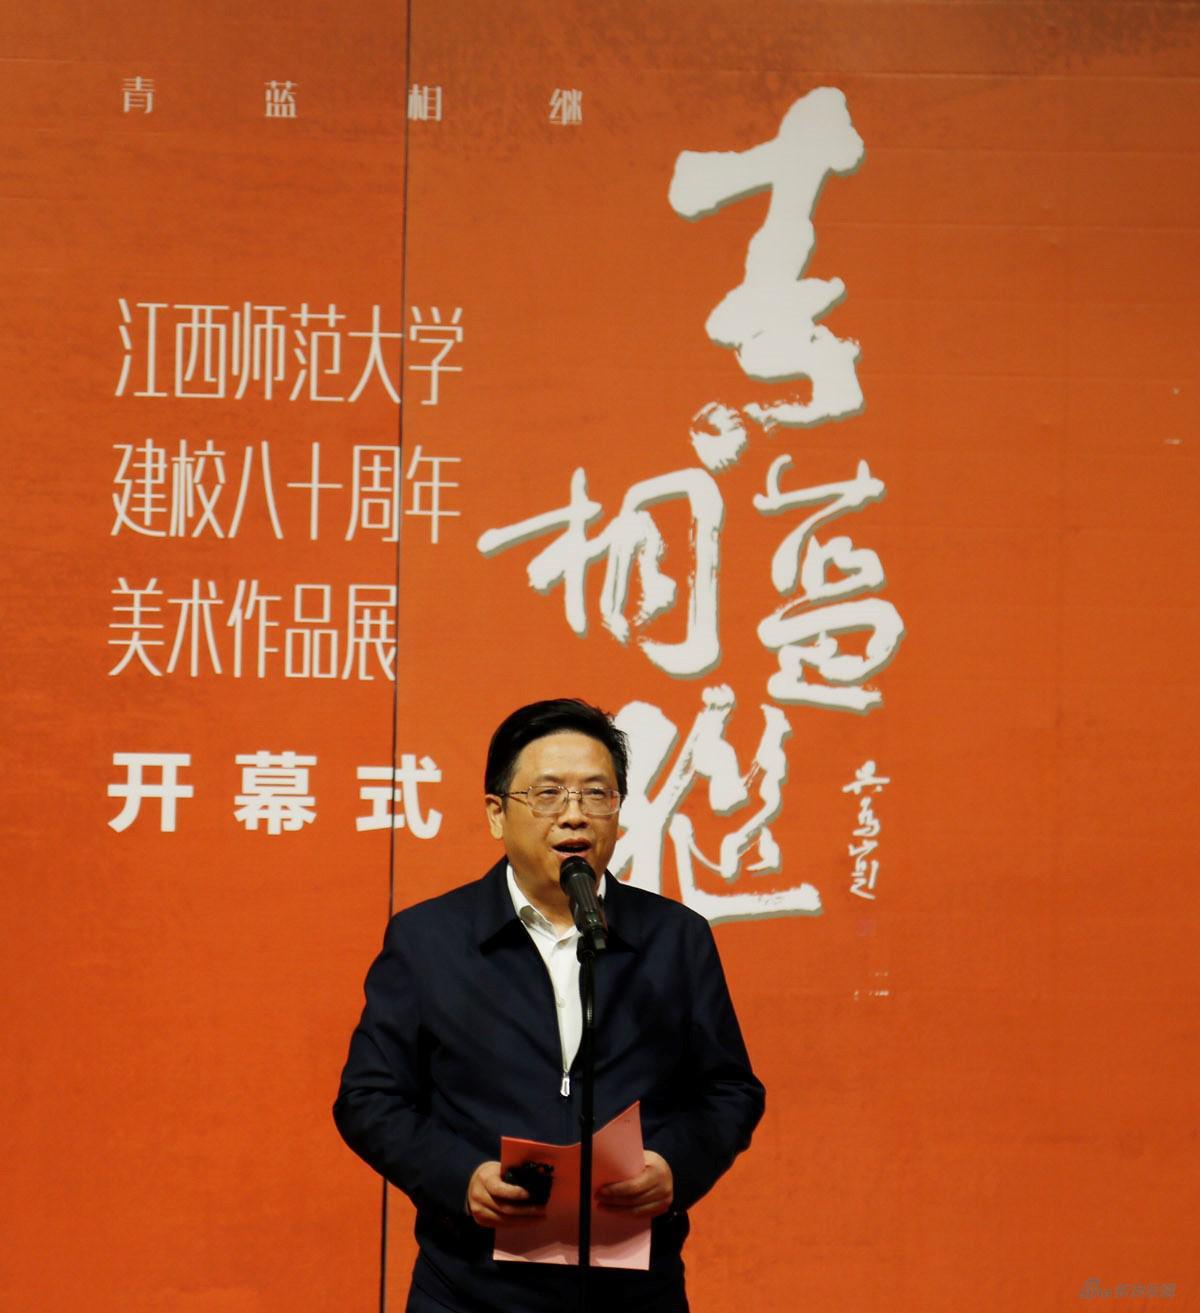 江西师范大学校长梅国平教授致辞并宣布画展开幕